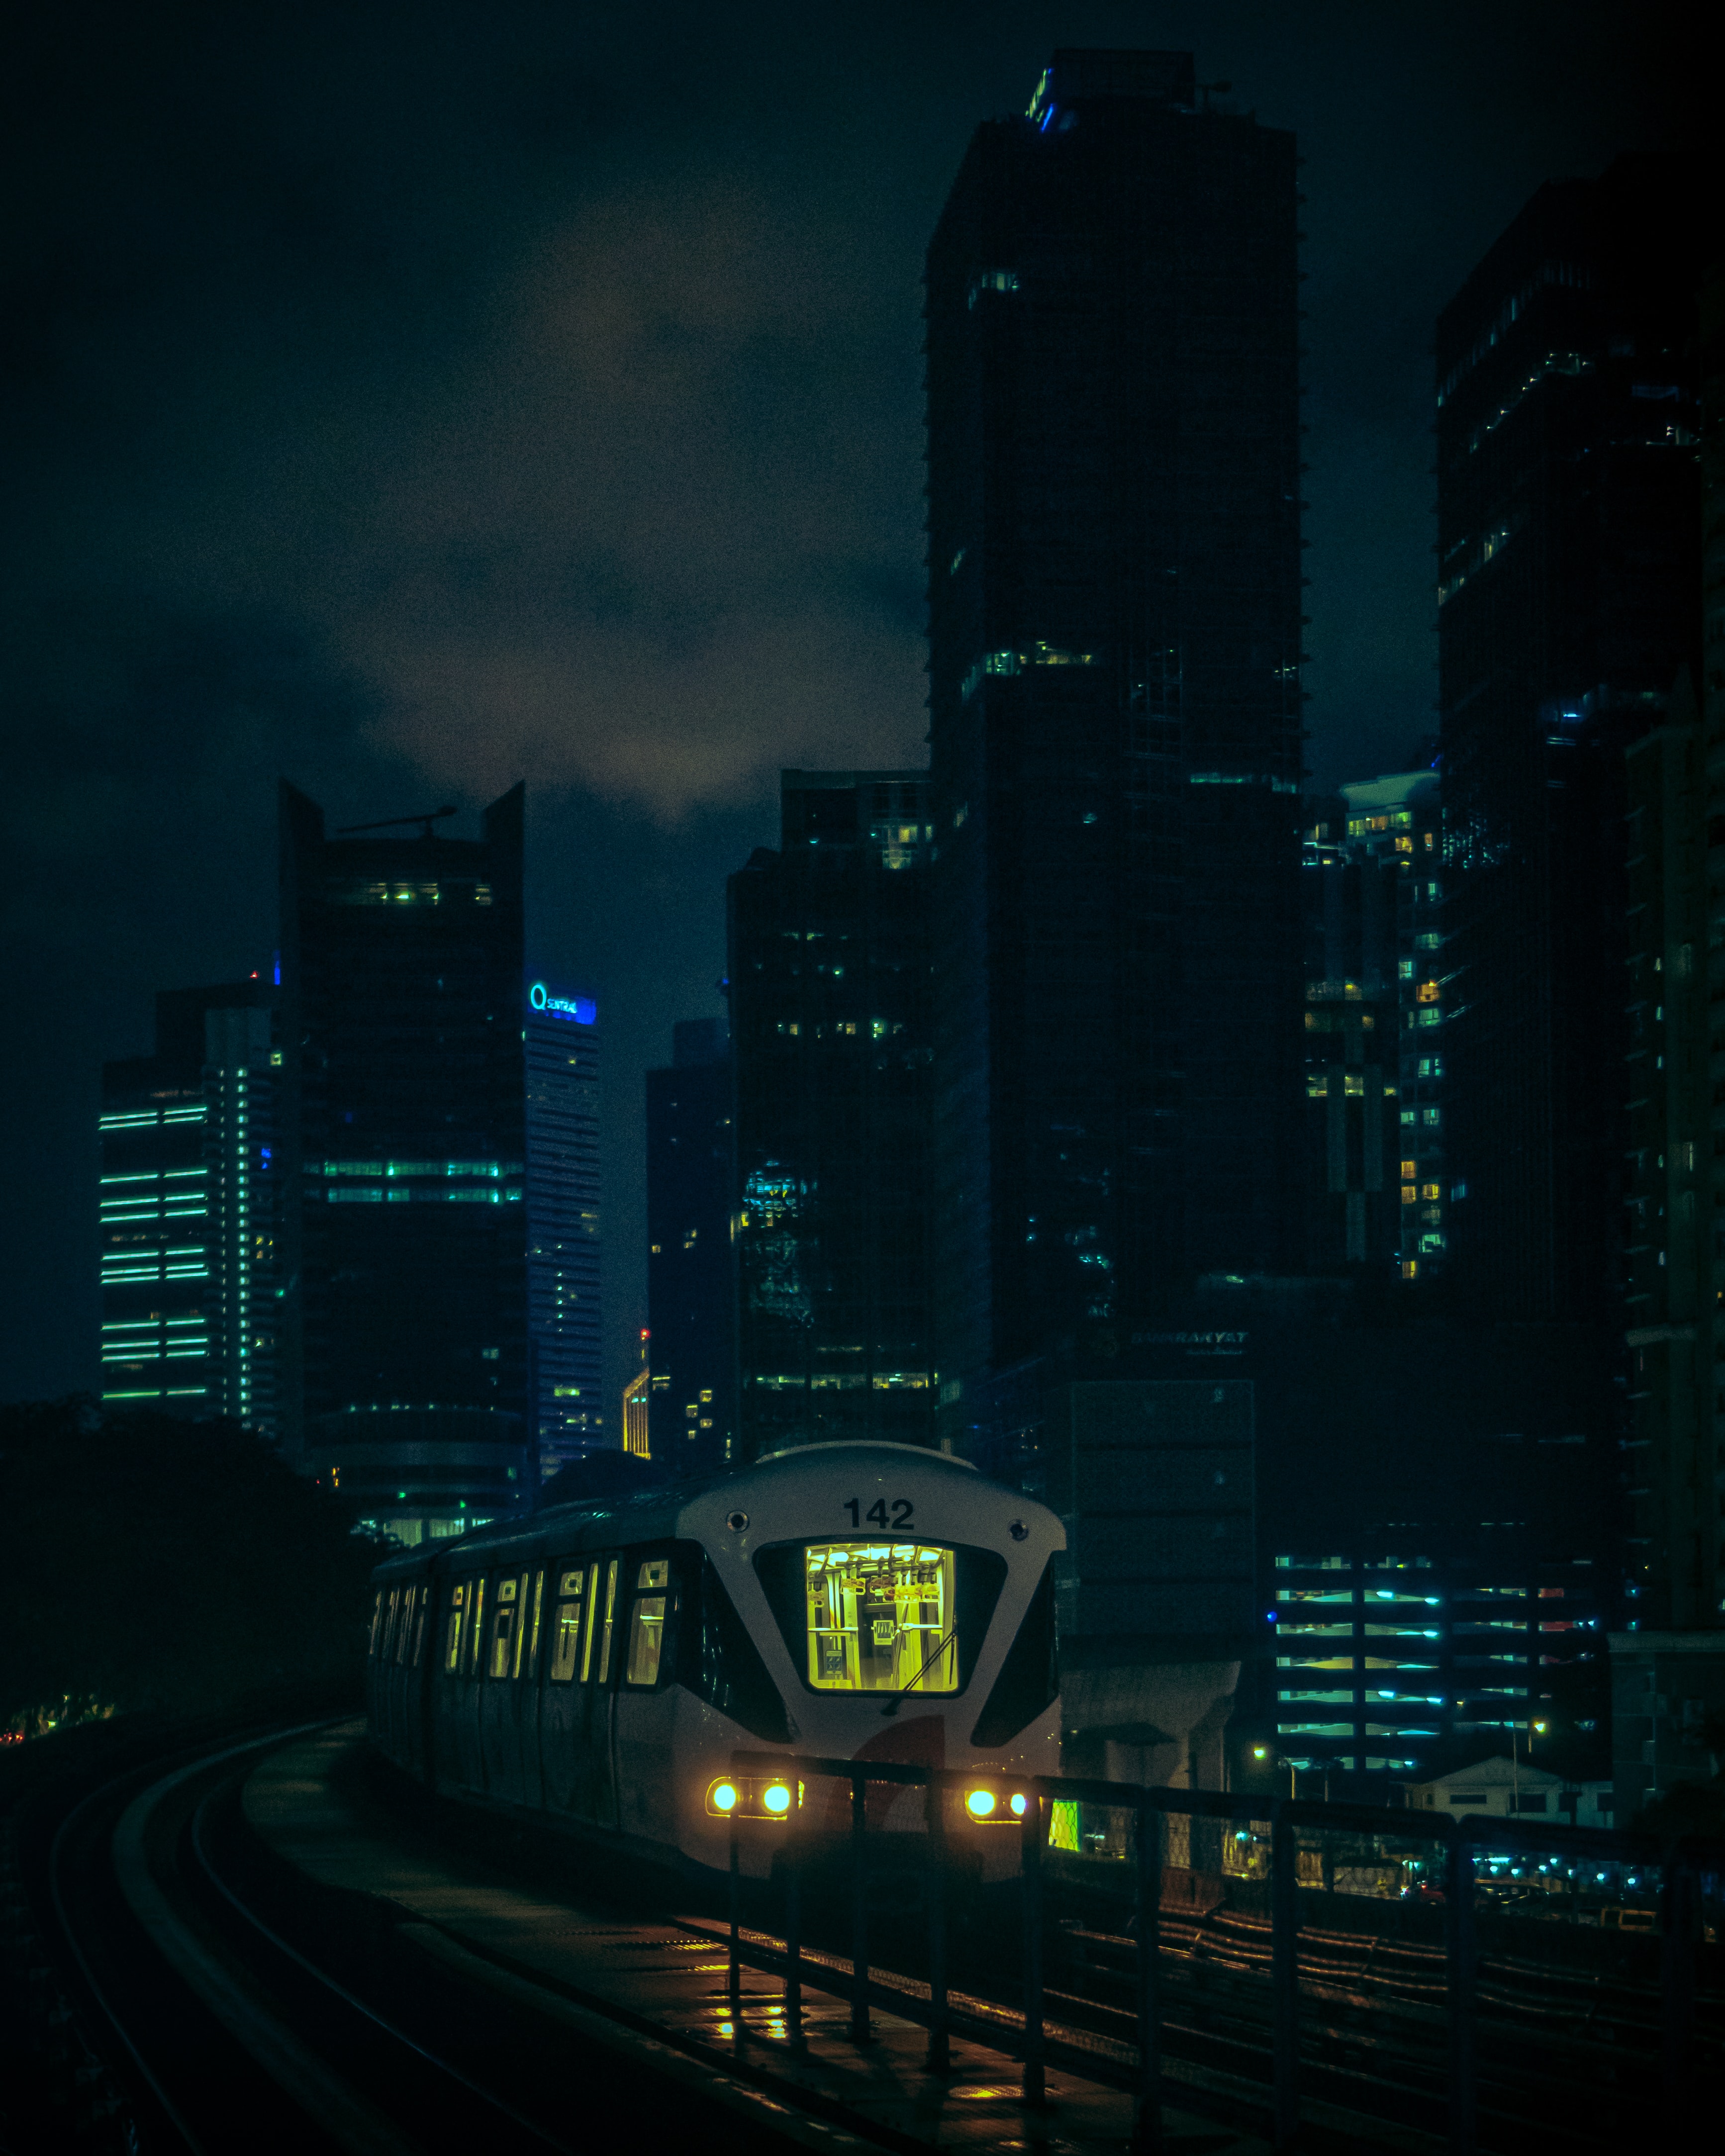 Descarga gratuita de fondo de pantalla para móvil de Un Tren, Noche, Ciudad, Edificio, Oscuro, Tren.